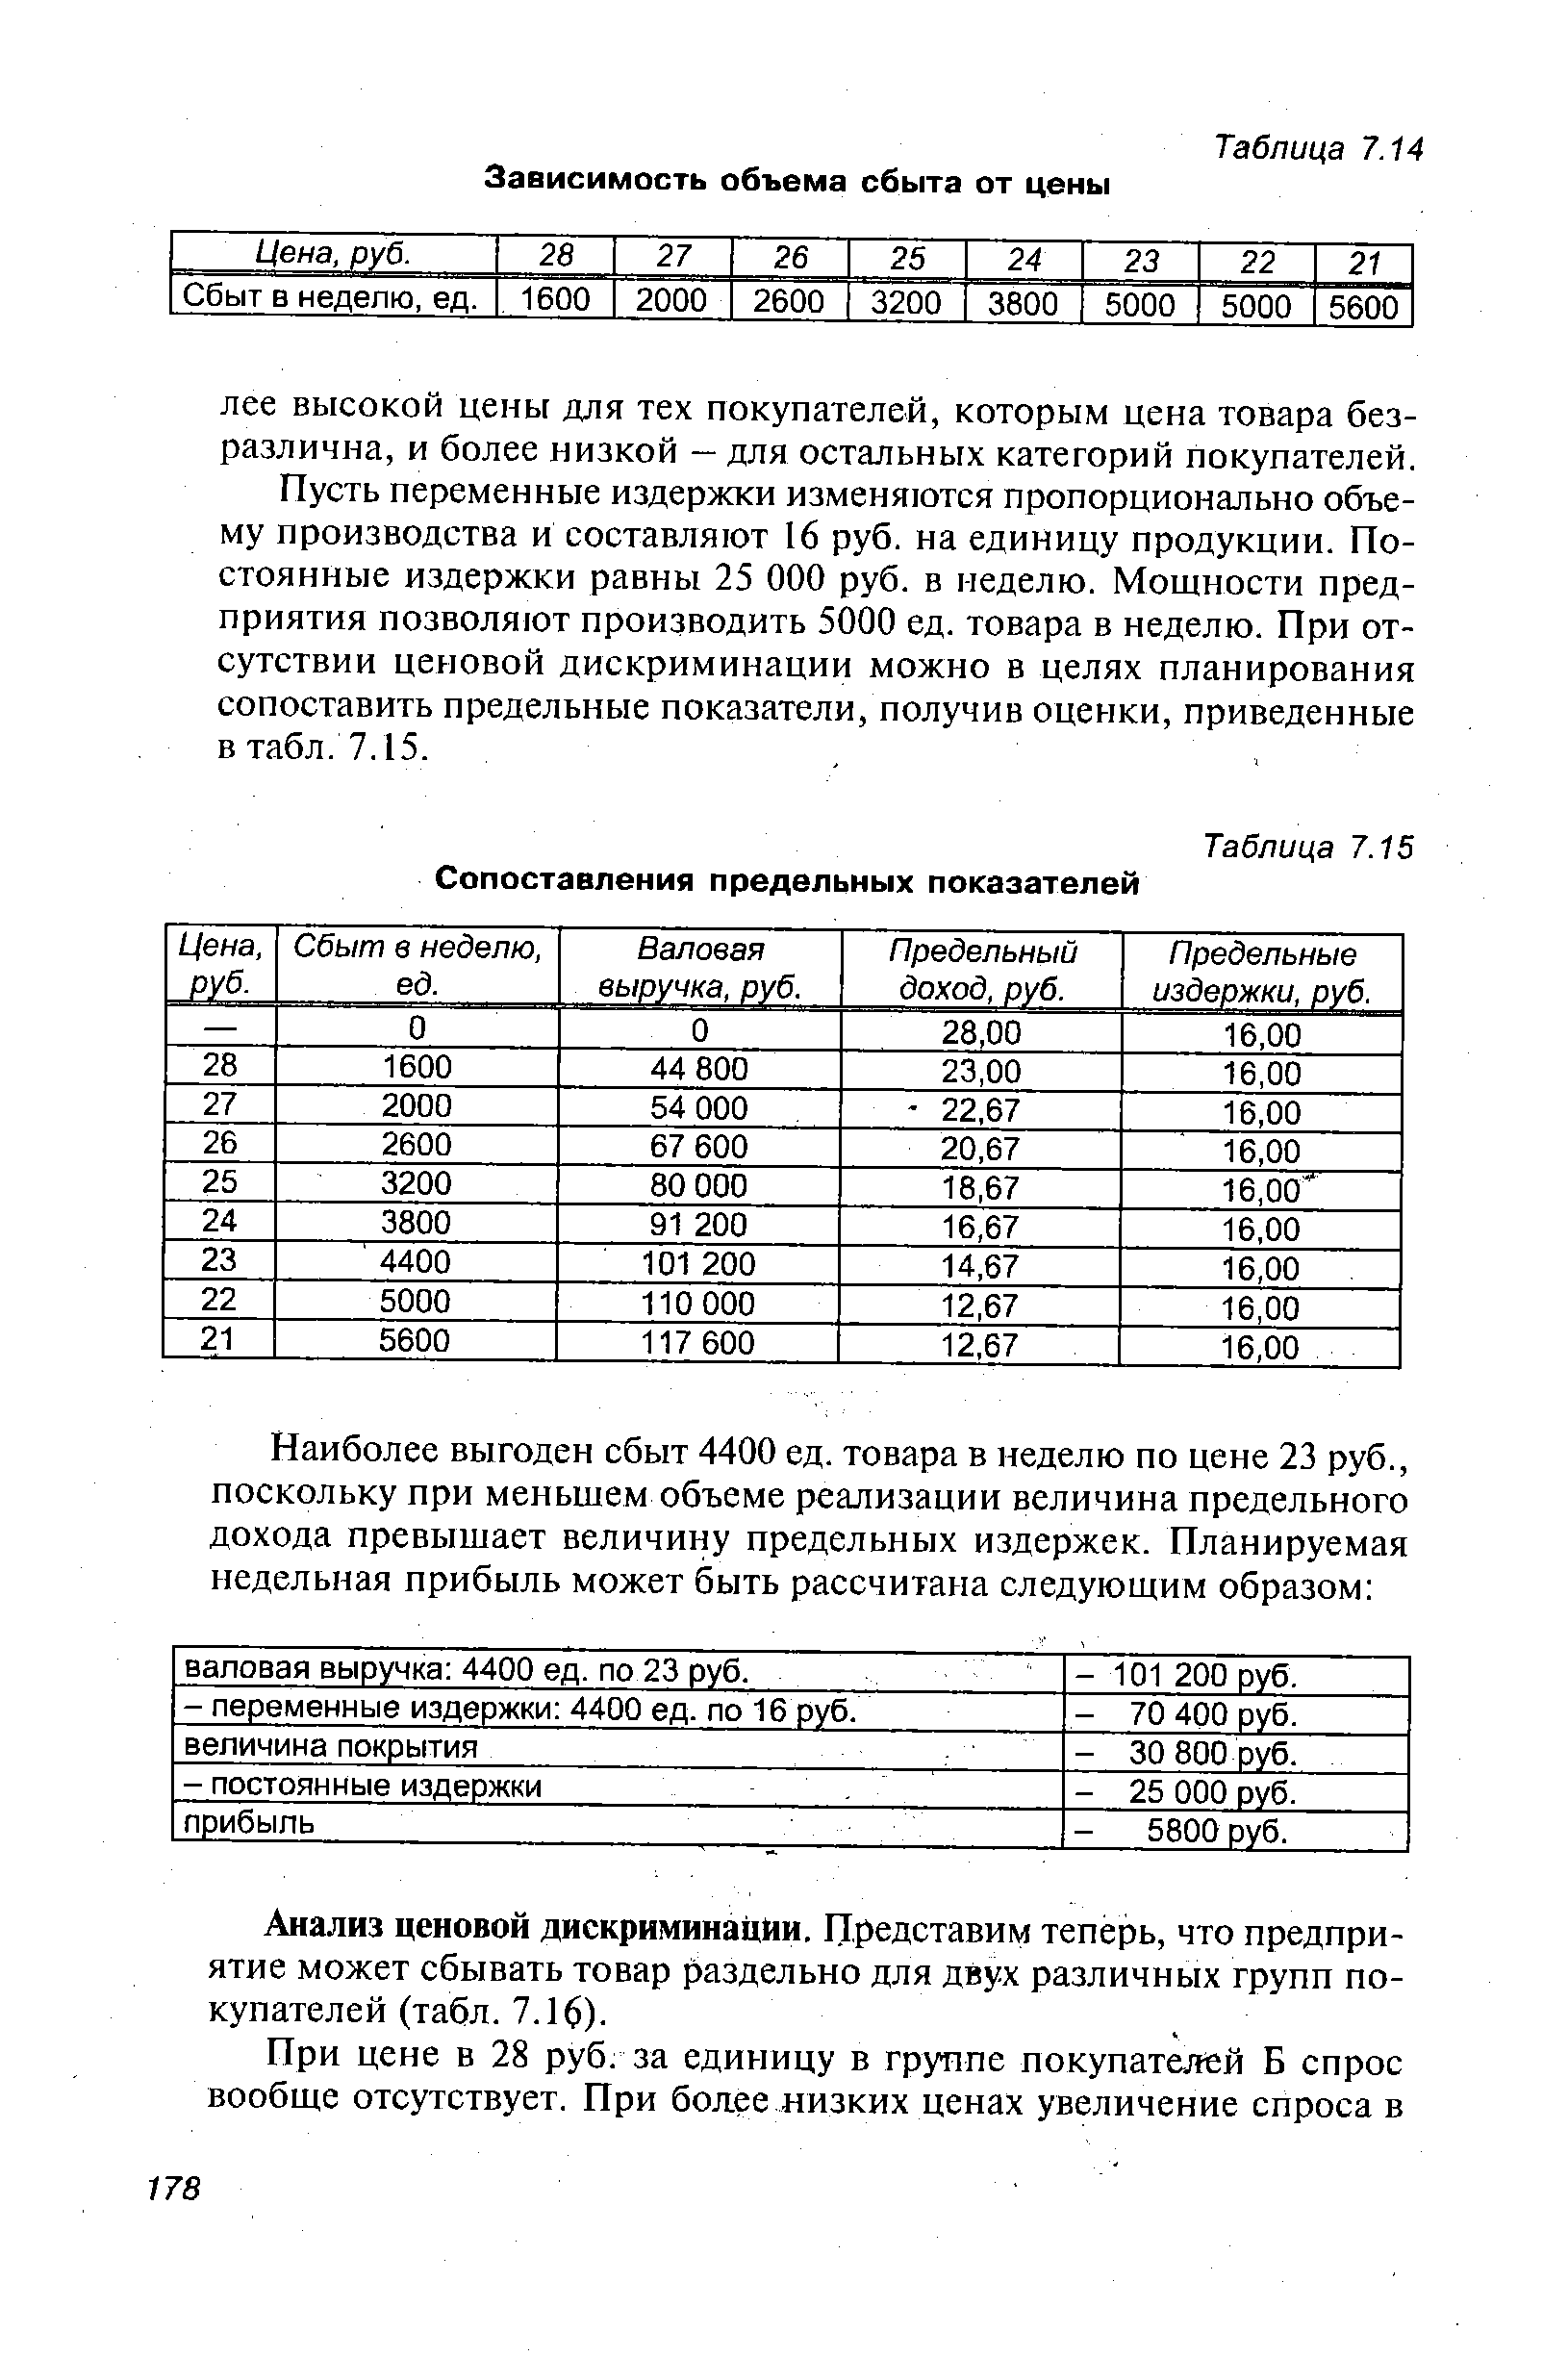 Таблица 7.15 Сопоставления предельных показателей
